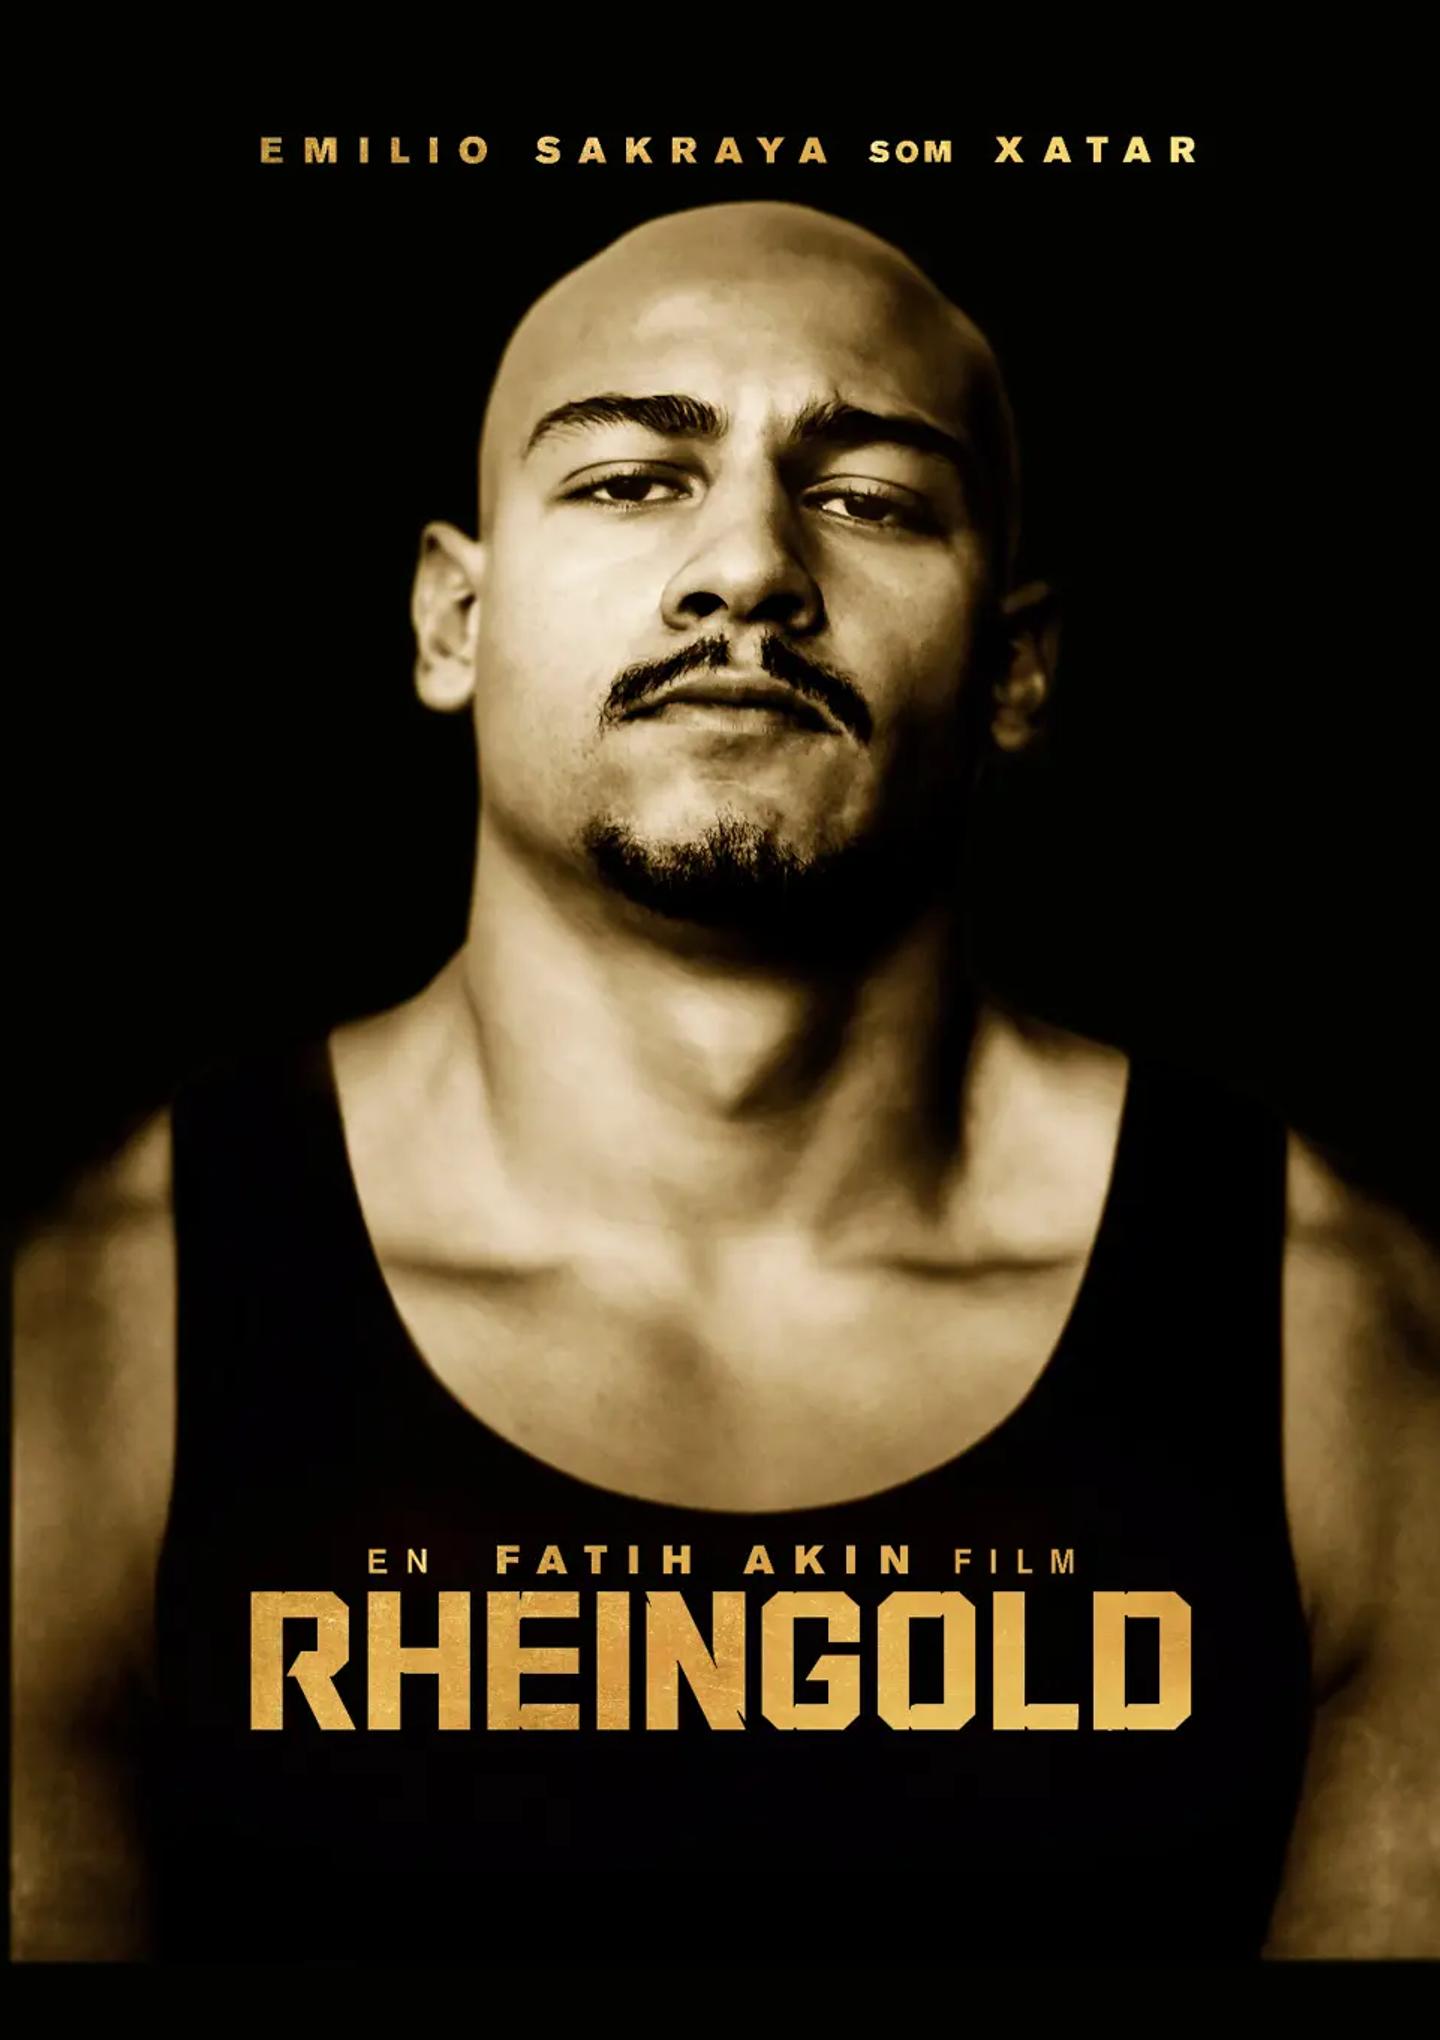 Plakat for 'Rheingold'